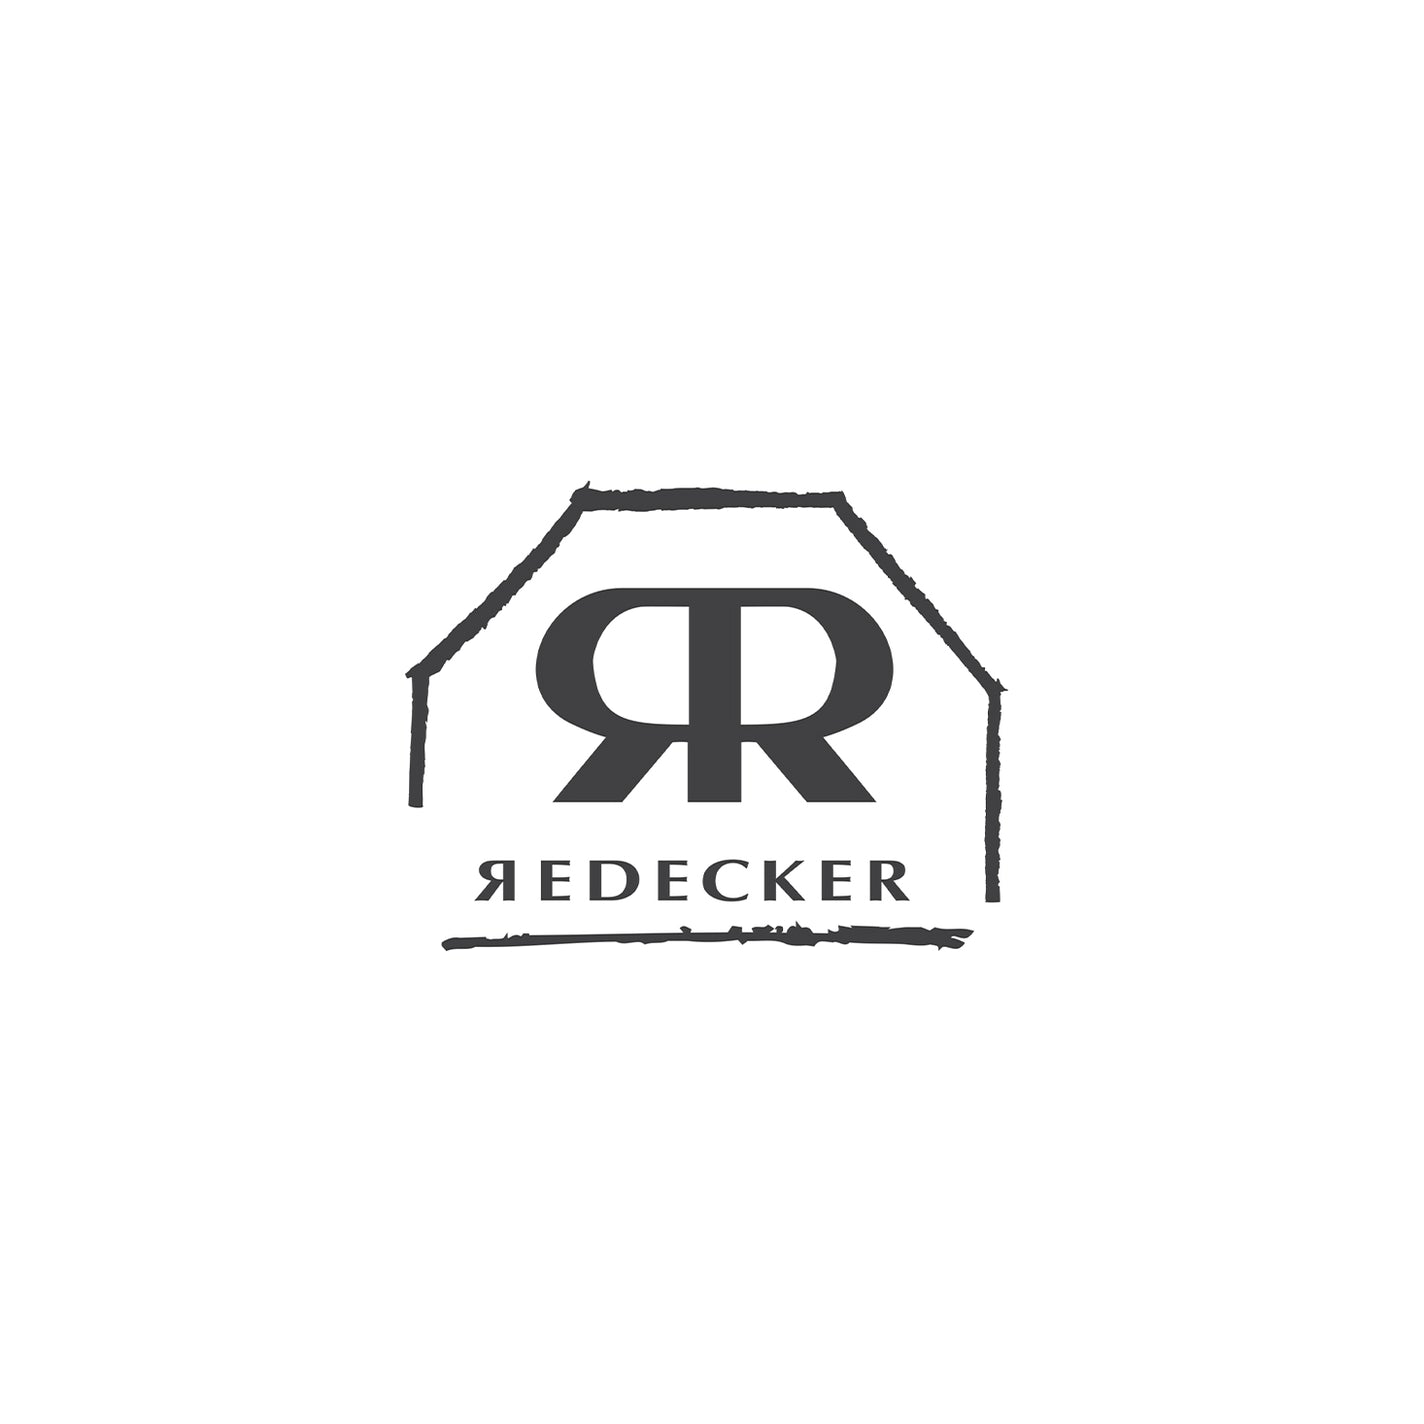 Redecker Baby Bundle - Value $93